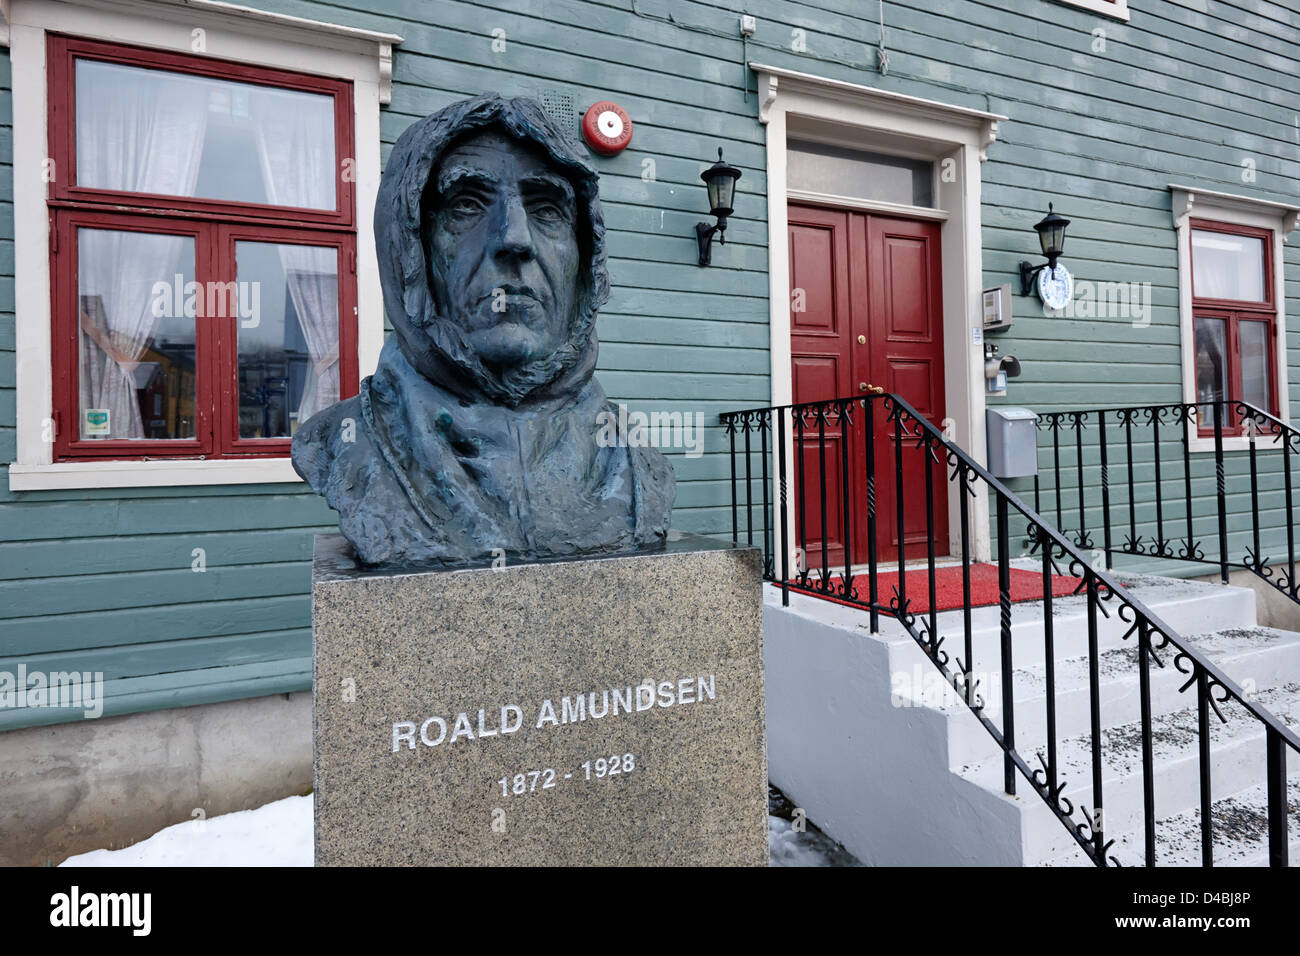 Roald Amundsen busto fuori il museo polare troms Tromso Norvegia europa Foto Stock